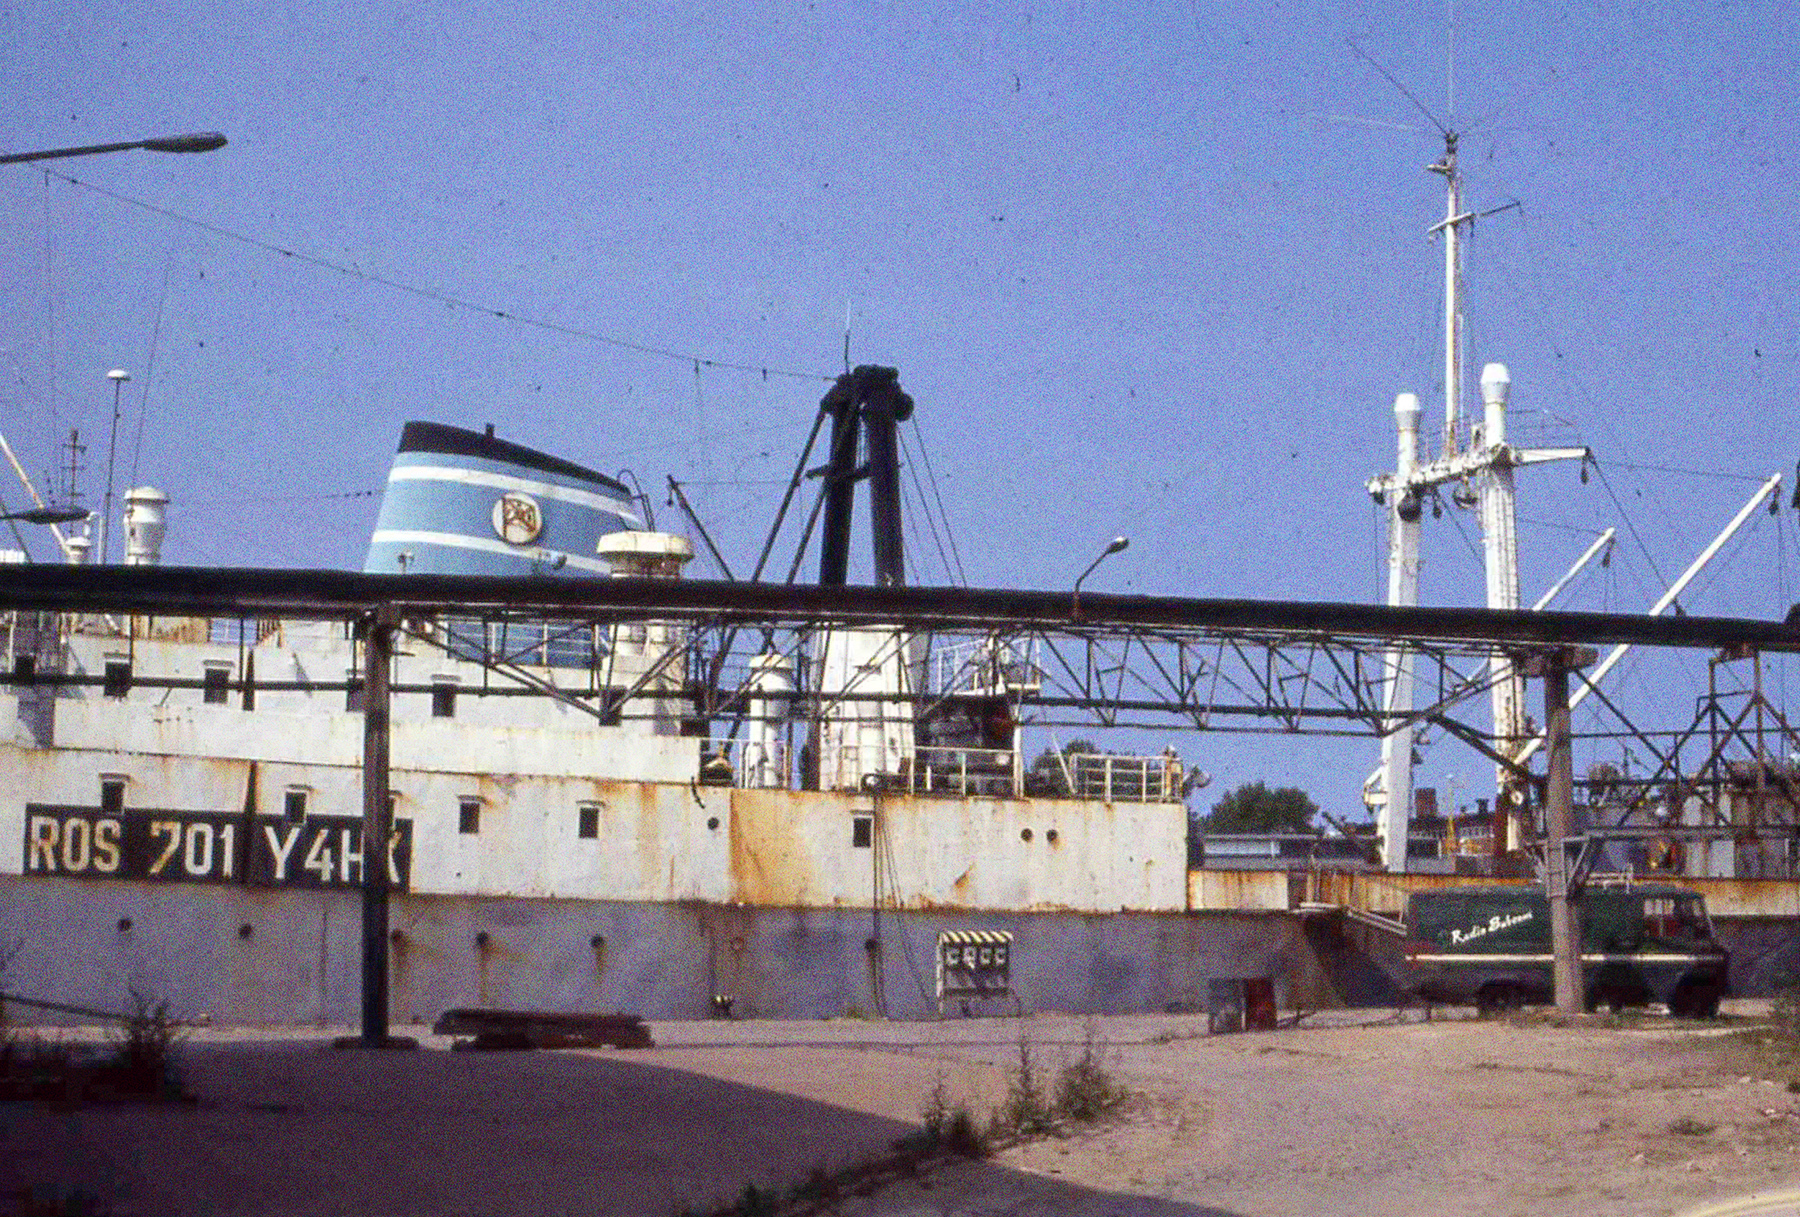 Die Stubnitz liegt an der Kaikante im Rostocker Hafen. Vor dem Schiff steht ein Fahrzeug mit der Aufschrift “Radio Subcom”.